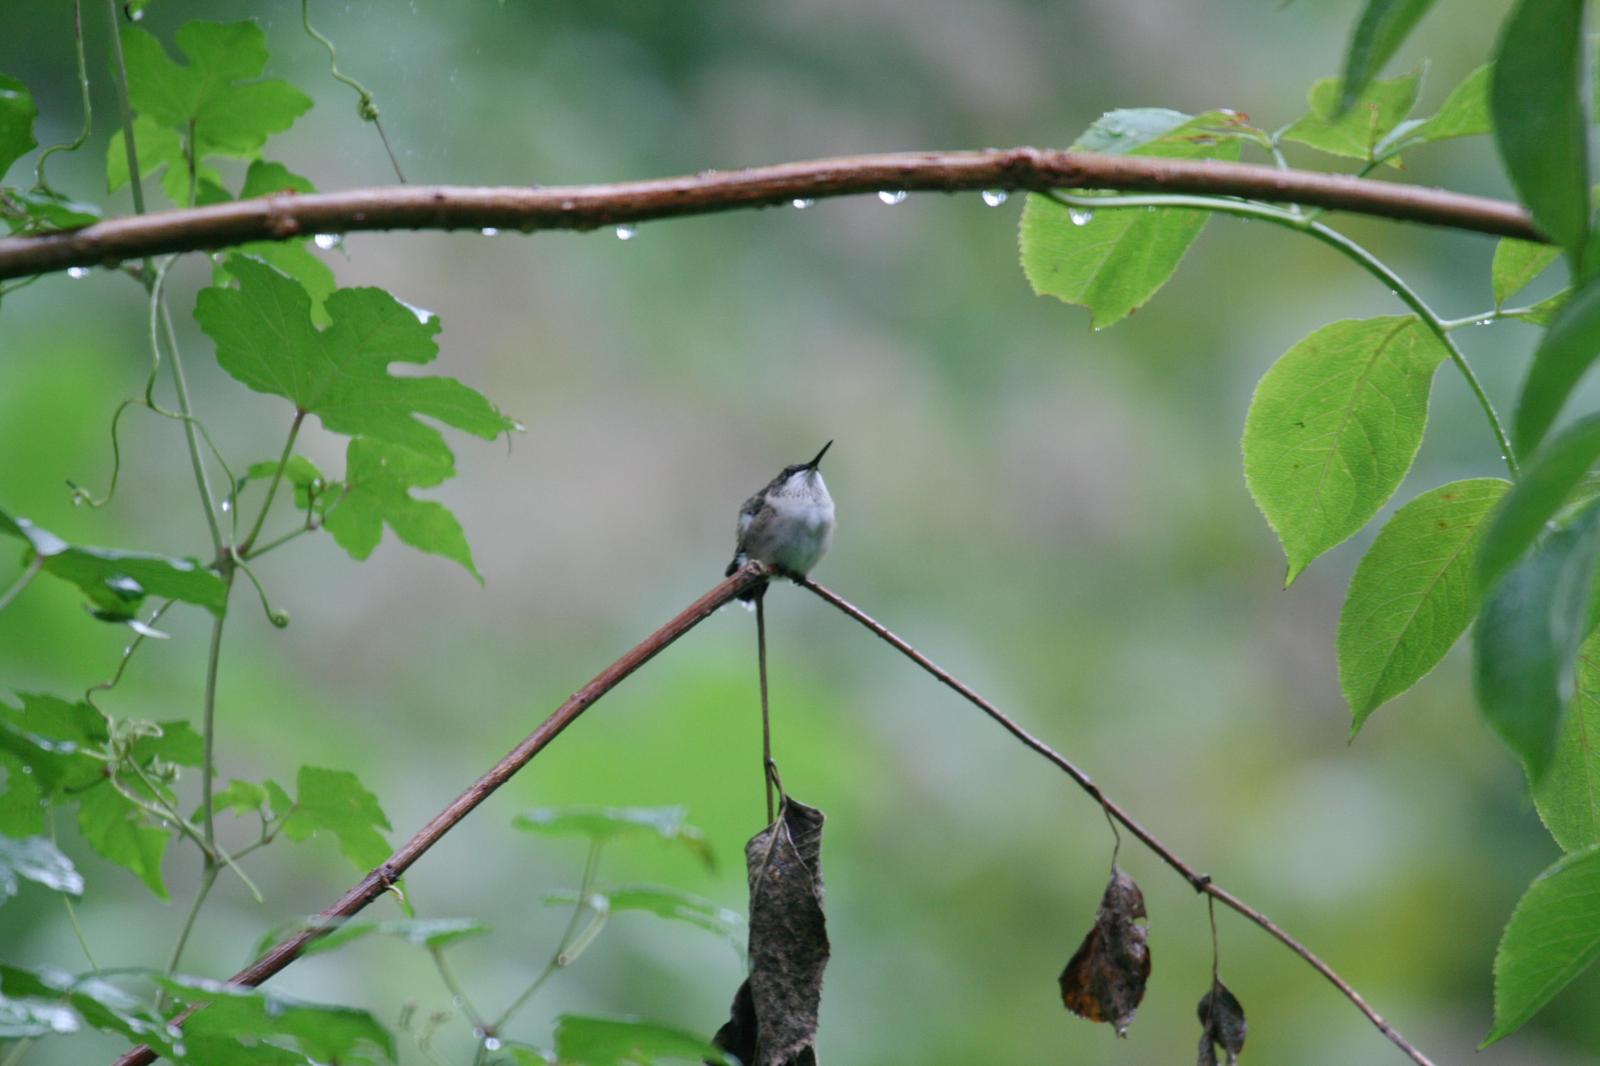 Ruby-throated Hummingbird Photo by Roseanne CALECA